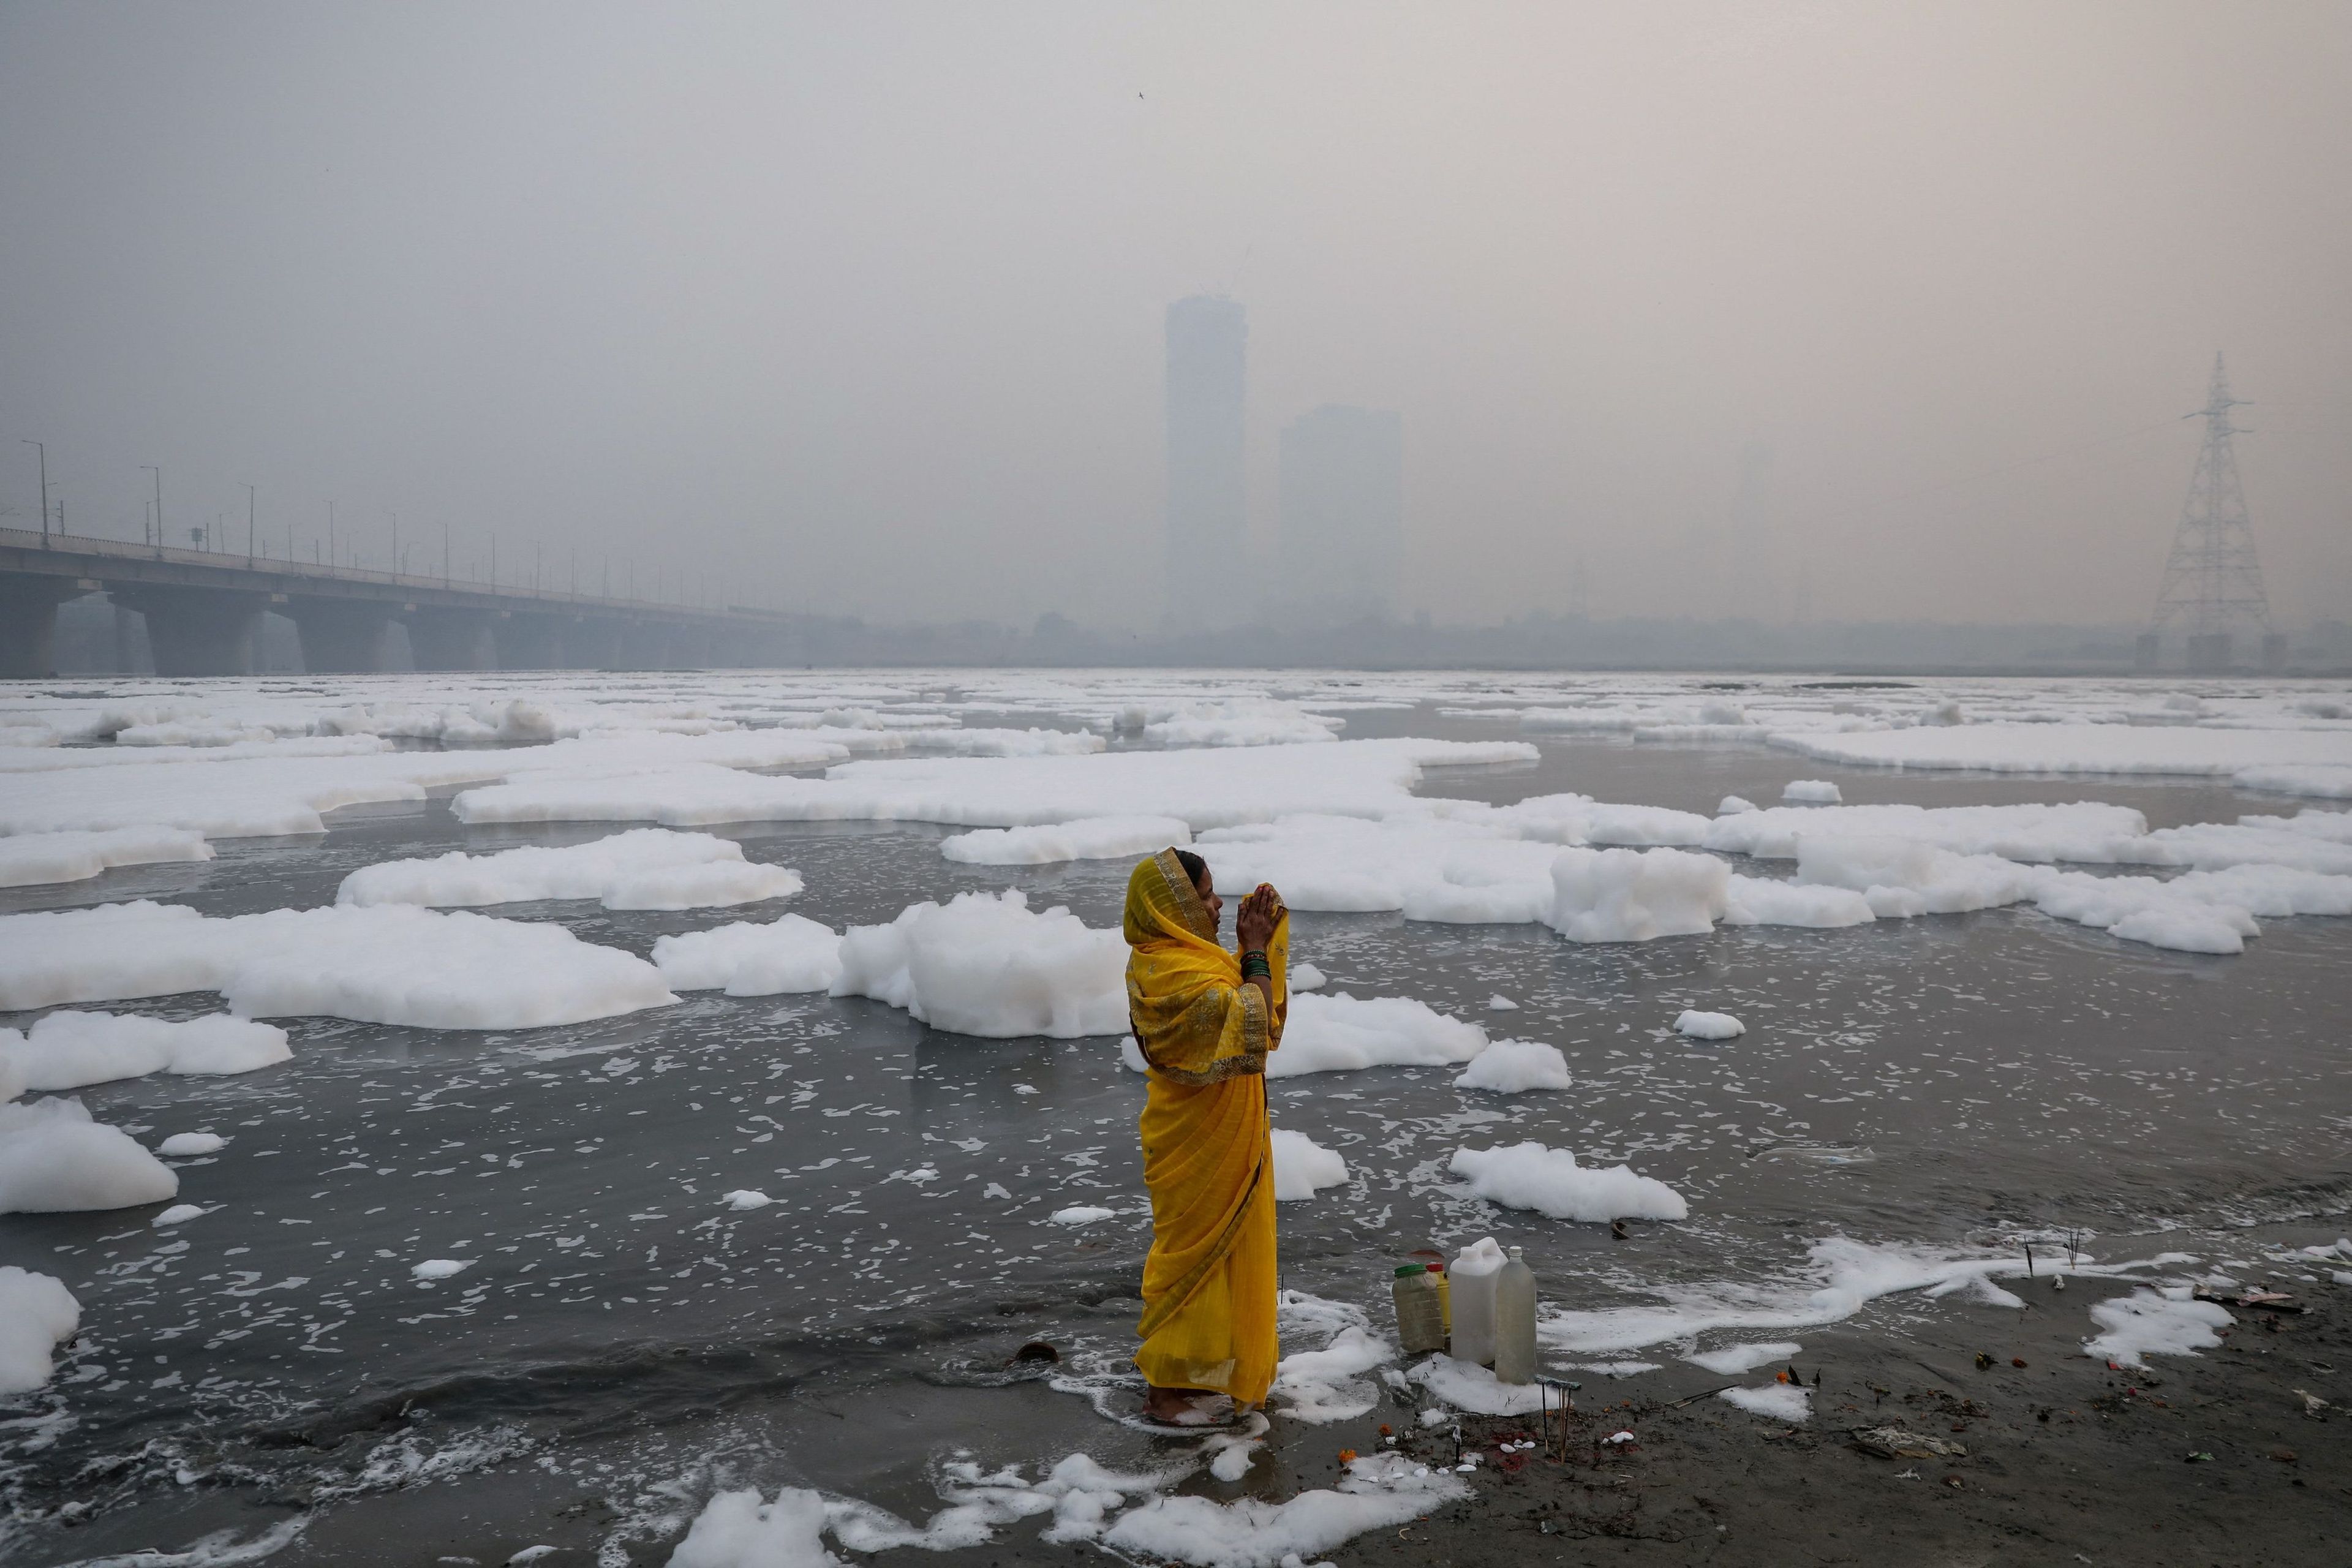 Esta fotografía finalista del Pulitzer muestra a una mujer rezando a orillas del río contaminado Yamuna en una mañana contaminada en Nueva Delhi (India).